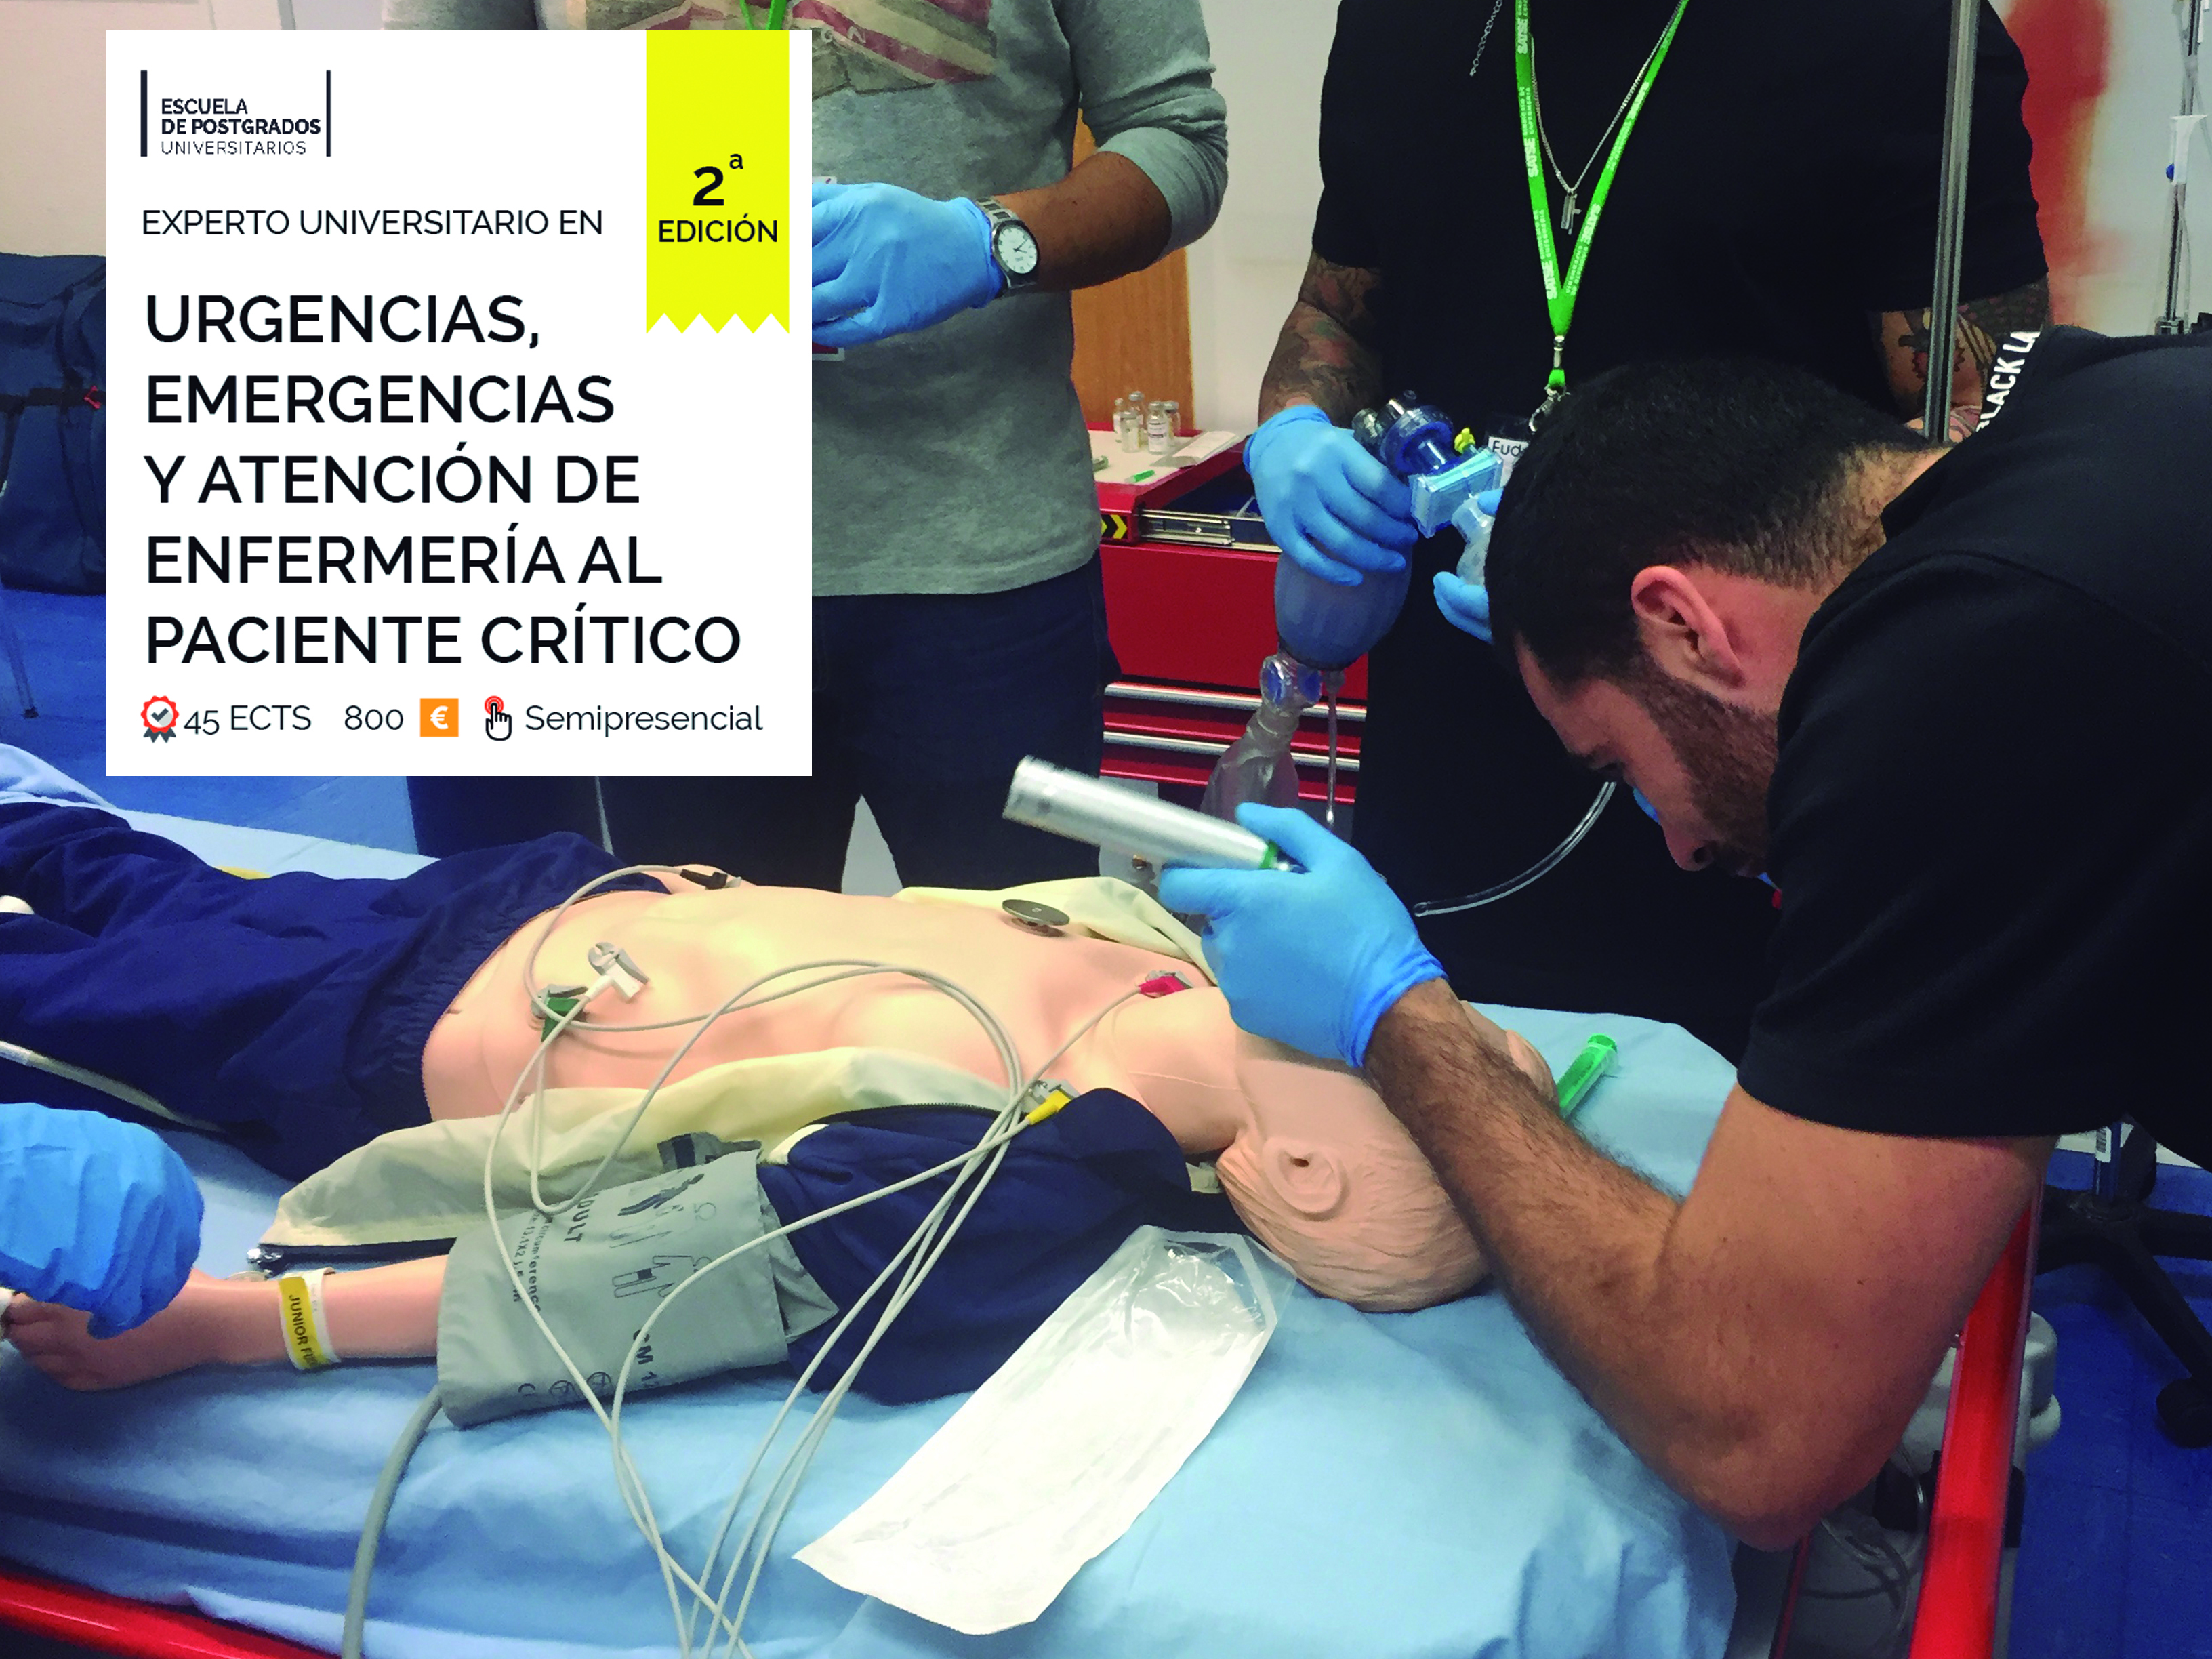 SEDE MADRID Experto universitario en Urgencias, Emergencias y atención enfermera a pacientes críticos